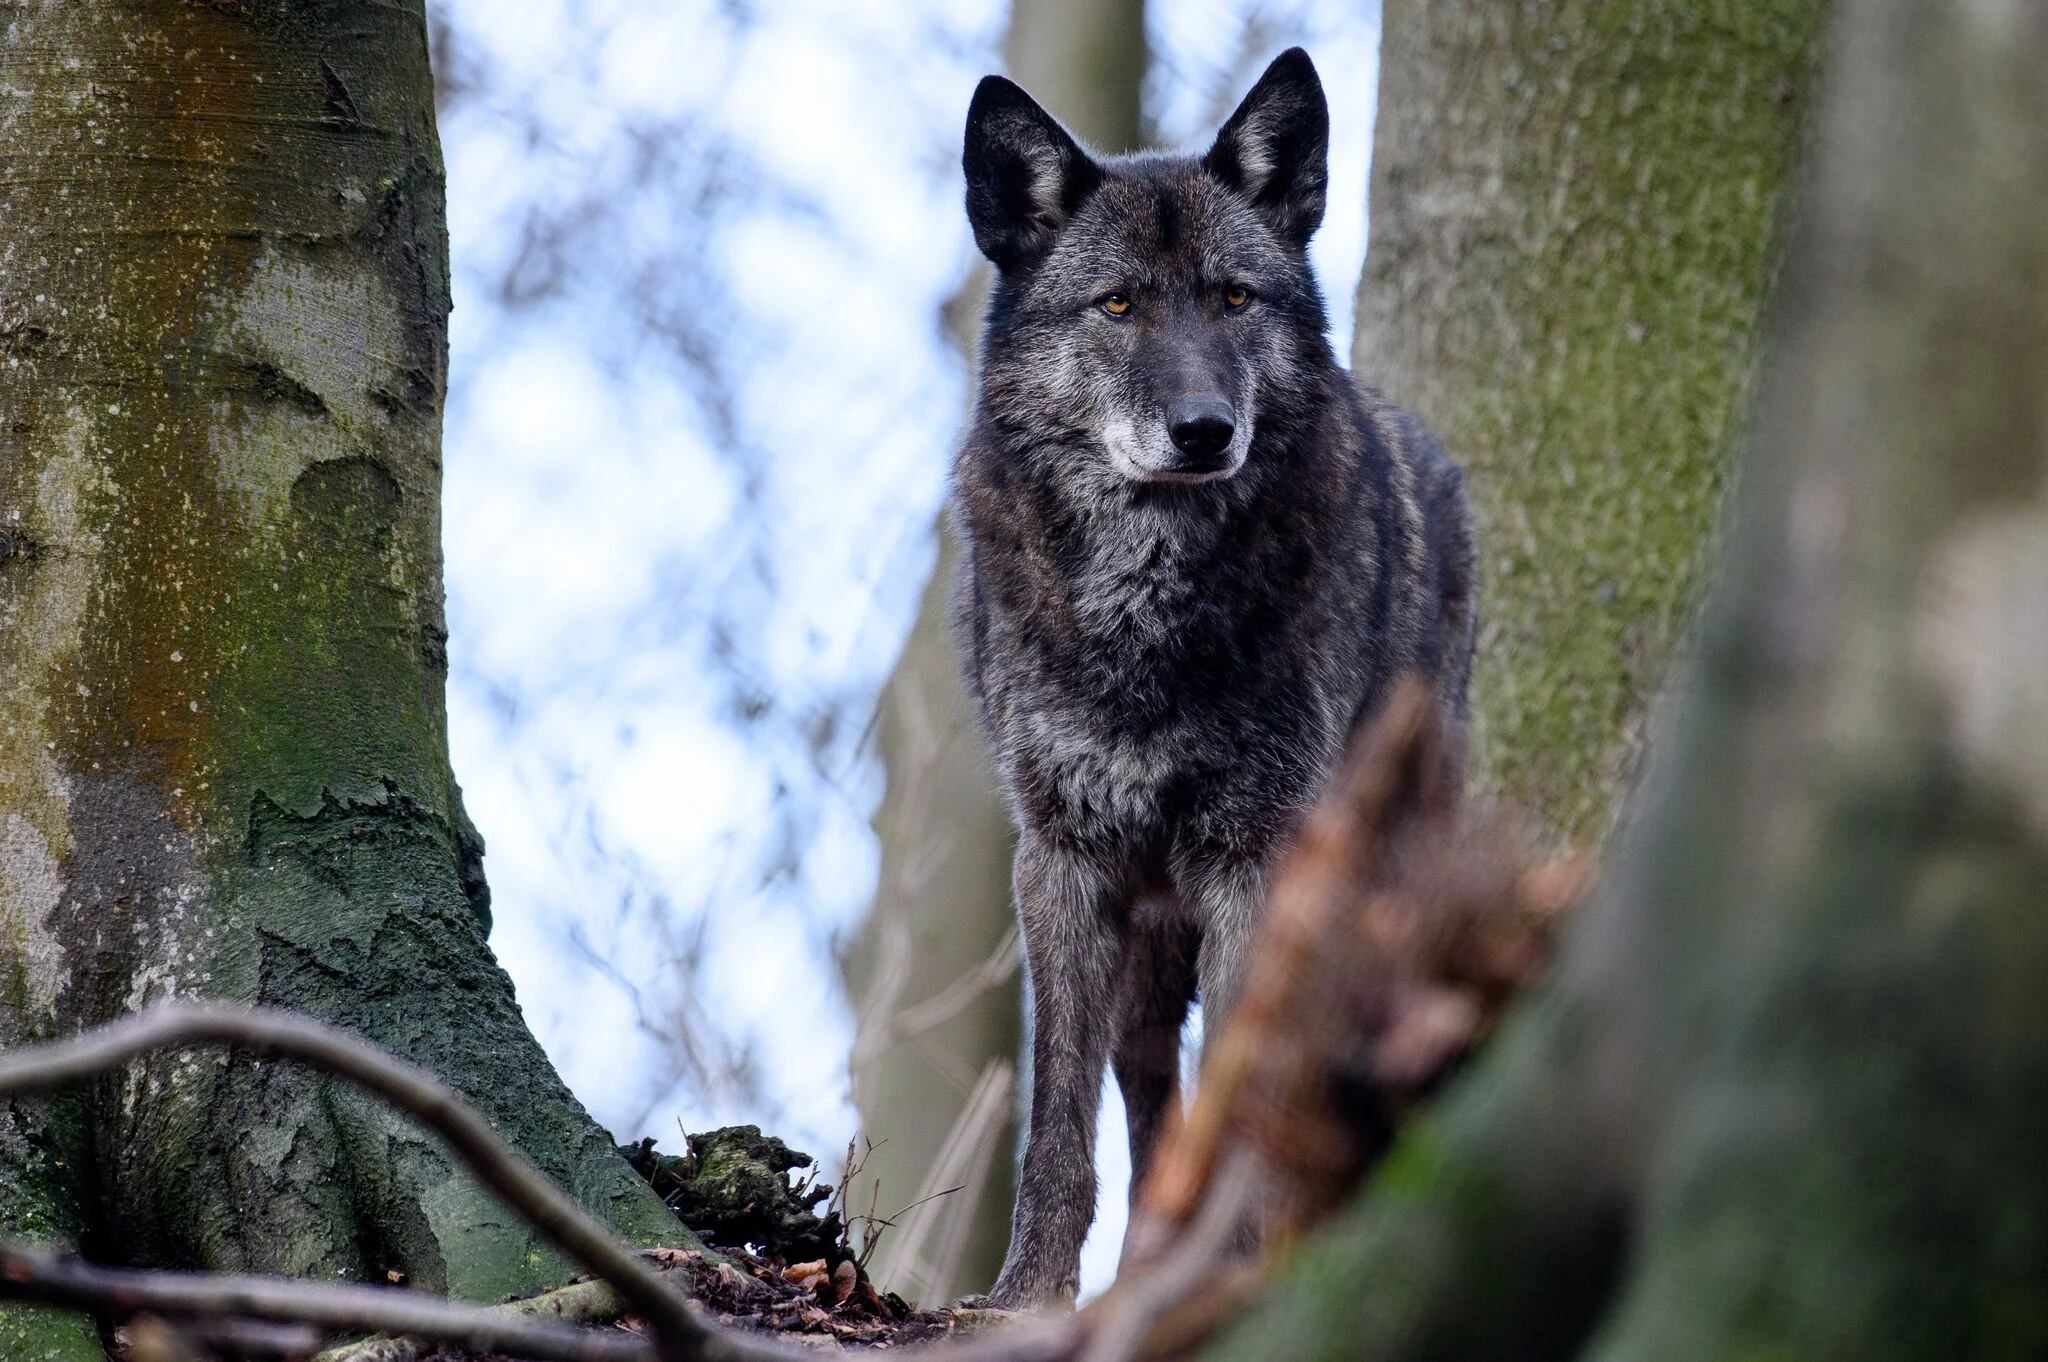 El cumplimiento estricto de las reglas y el sostenimiento de jerarquías claras son premisas ineludibles para los lobos (Swen Pförtner/dpa)